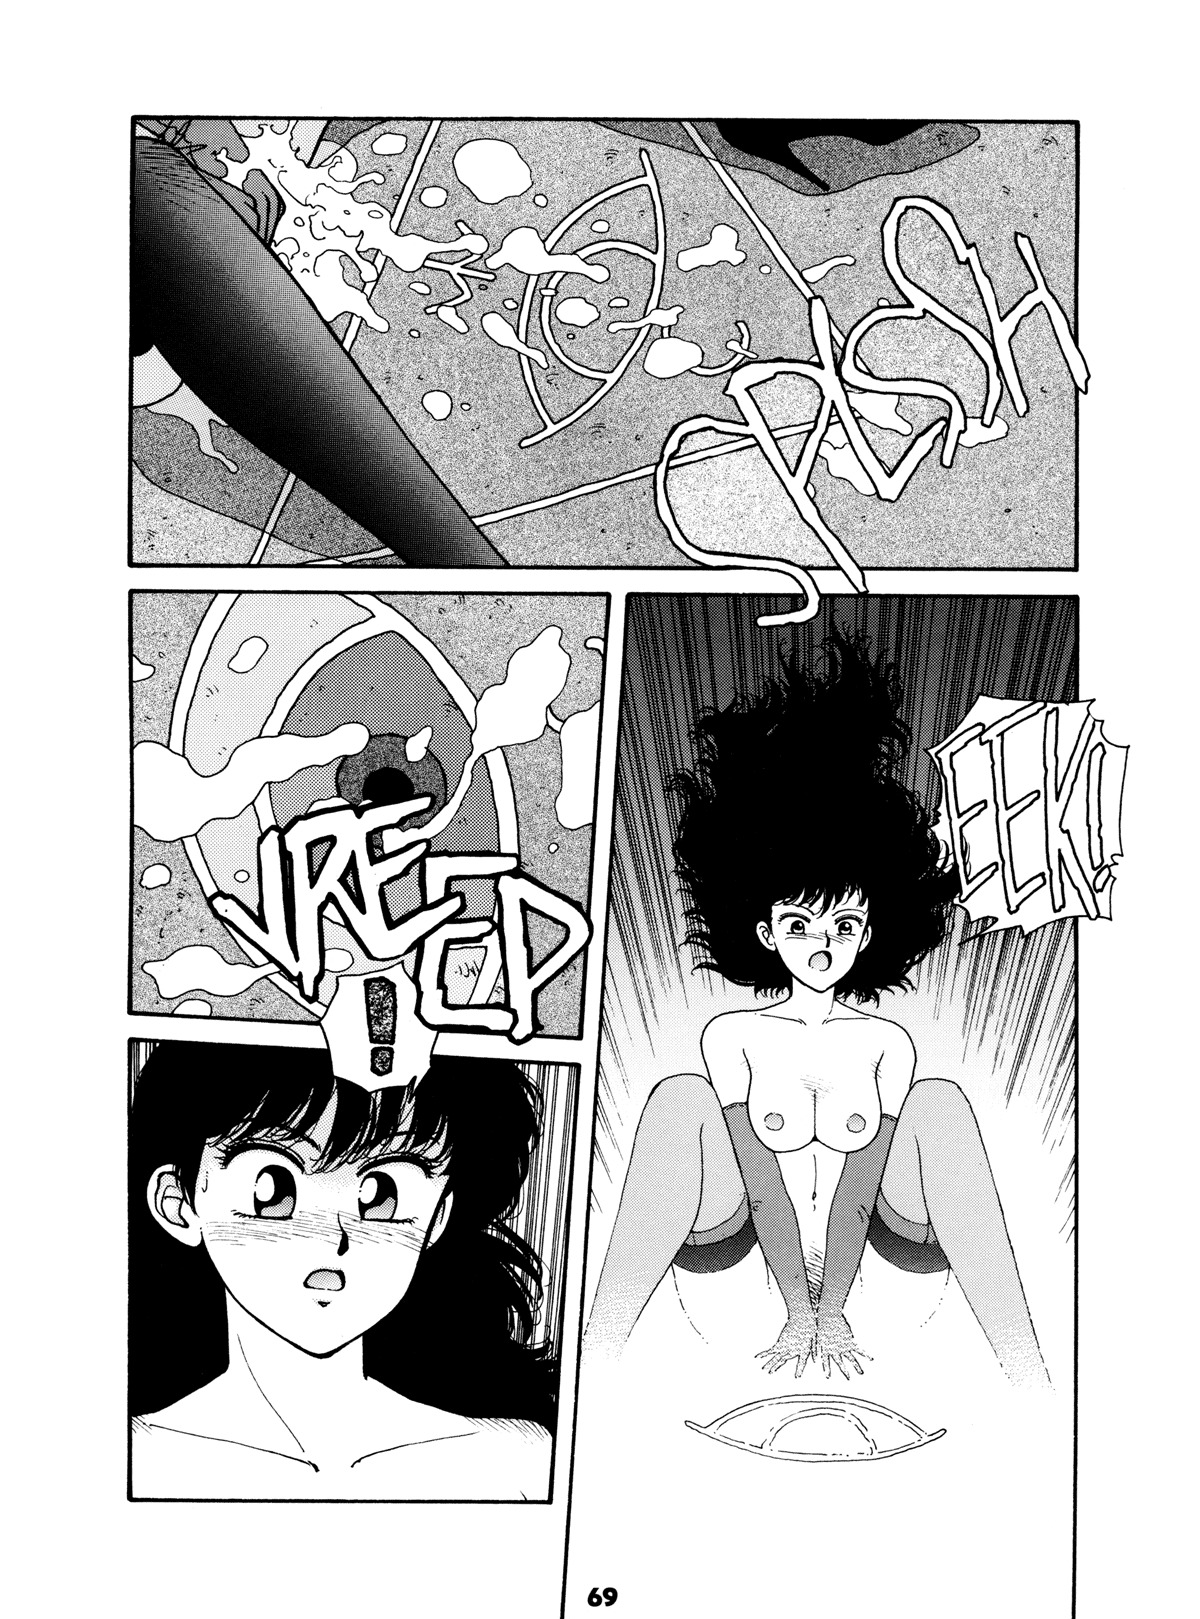 Misty Girl Extreme 68 hentai manga